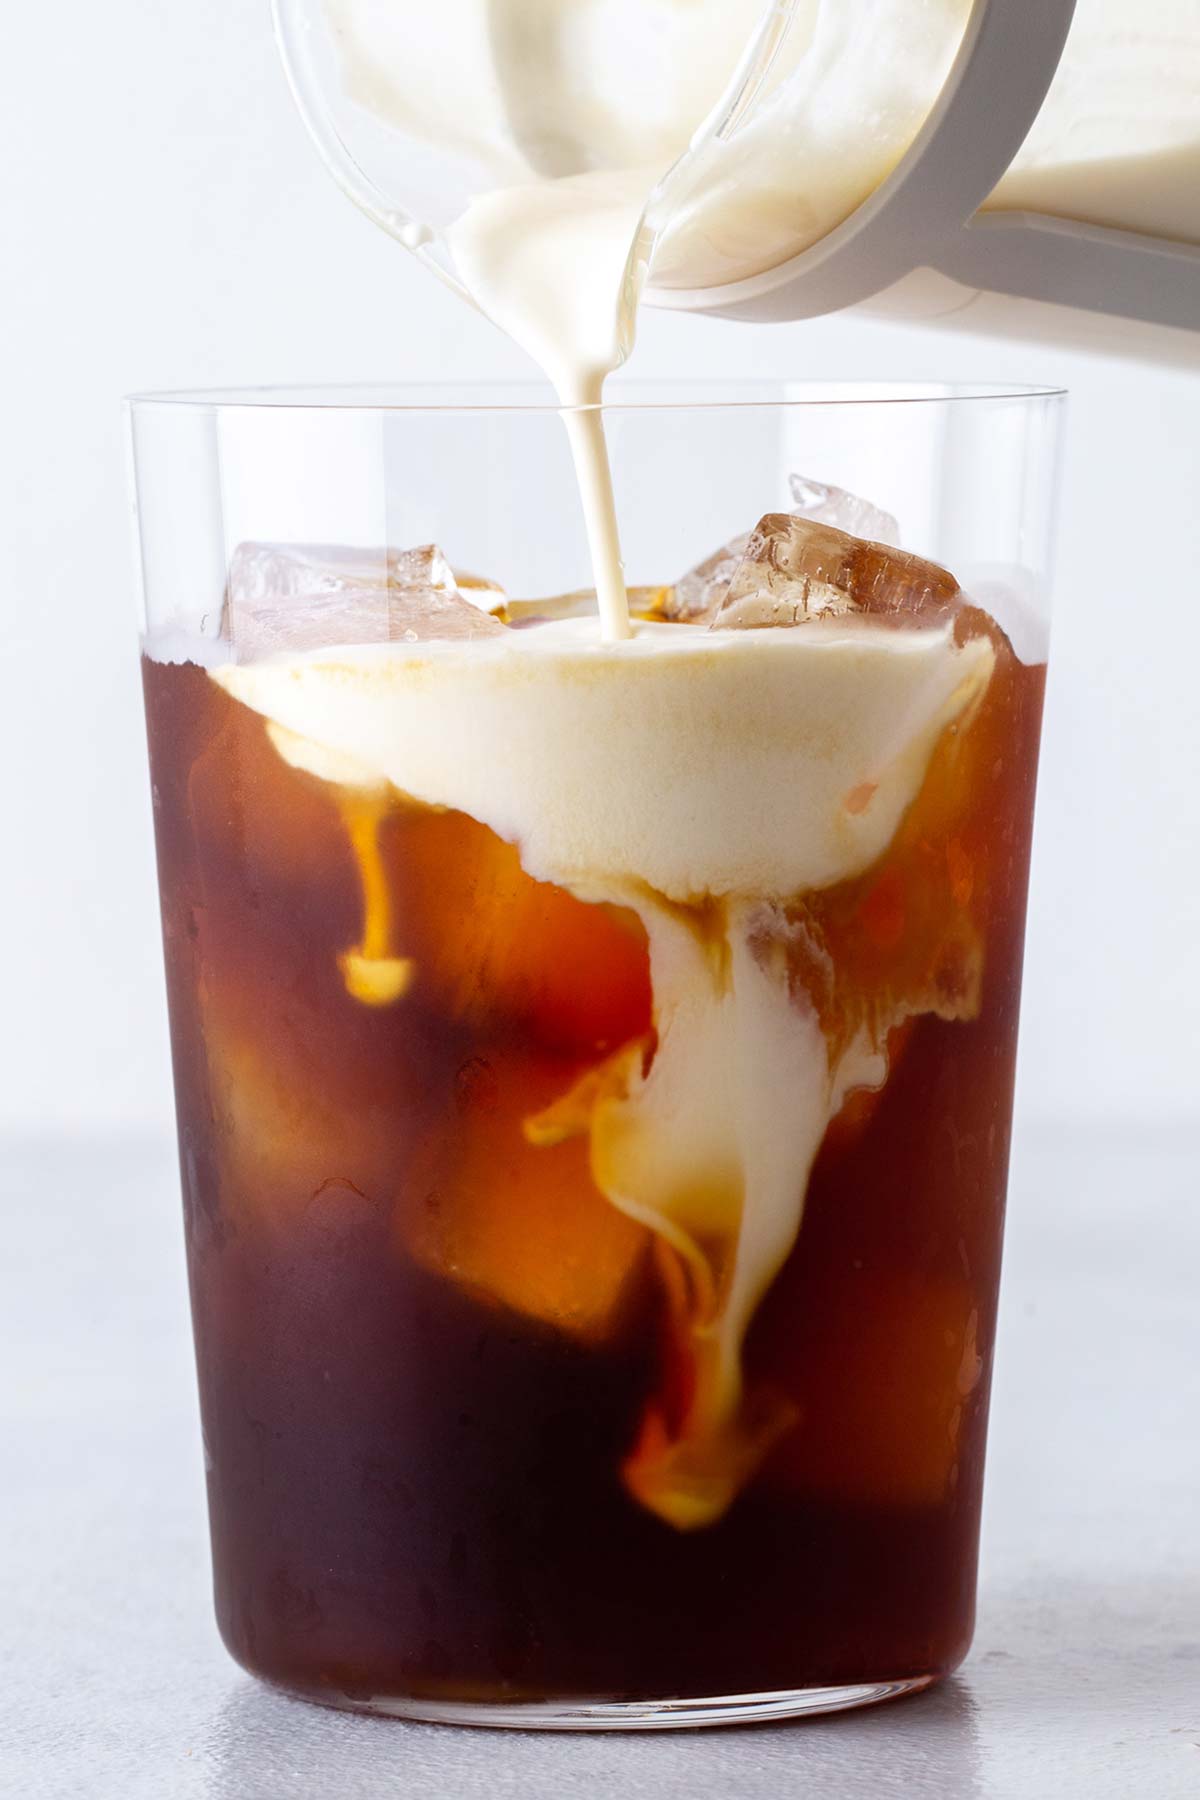 Busa dingin Carmel dituangkan ke dalam es kopi dalam gelas.